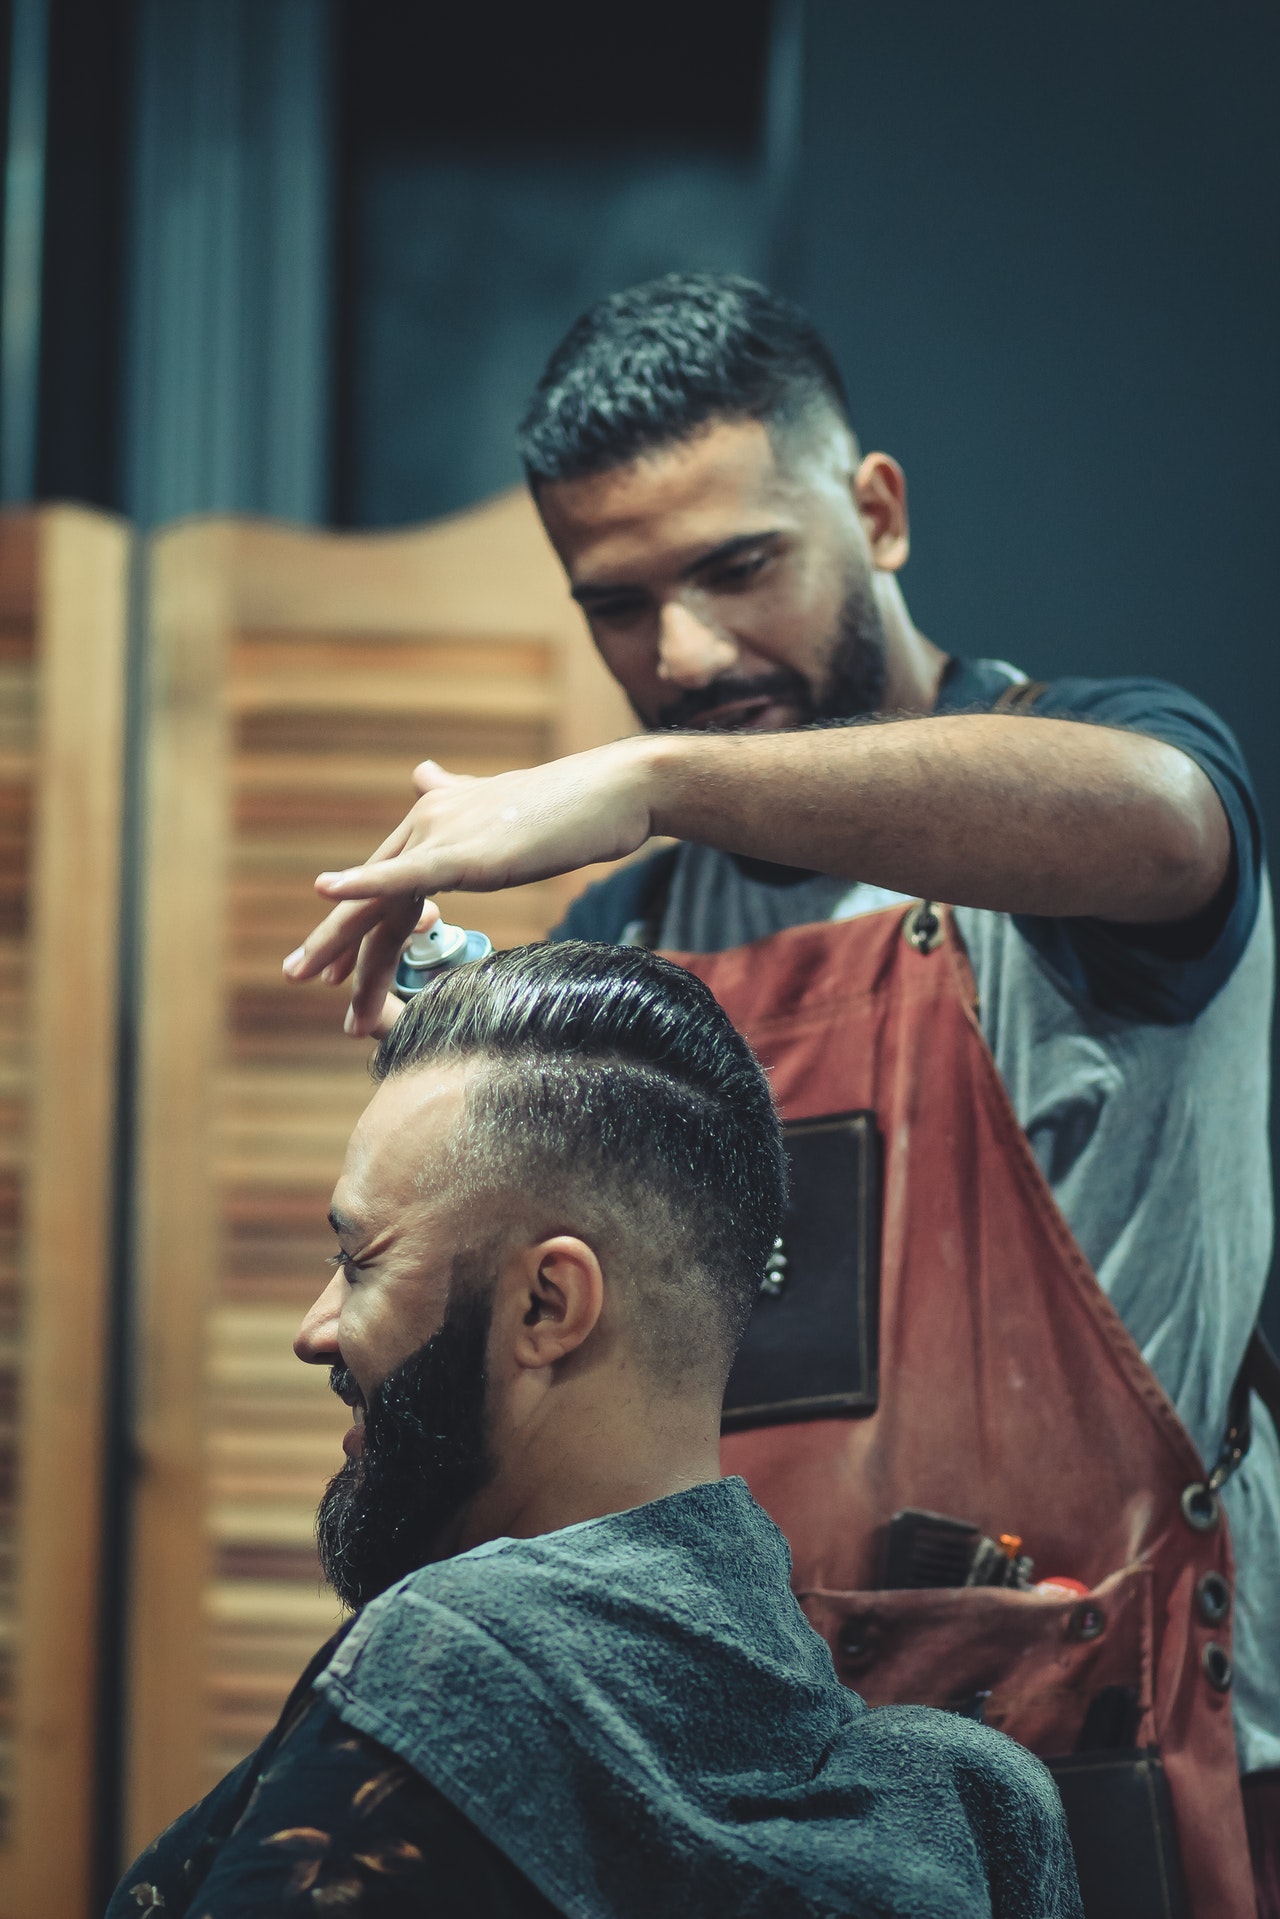 barber-barbershop-blurred-background-2040189